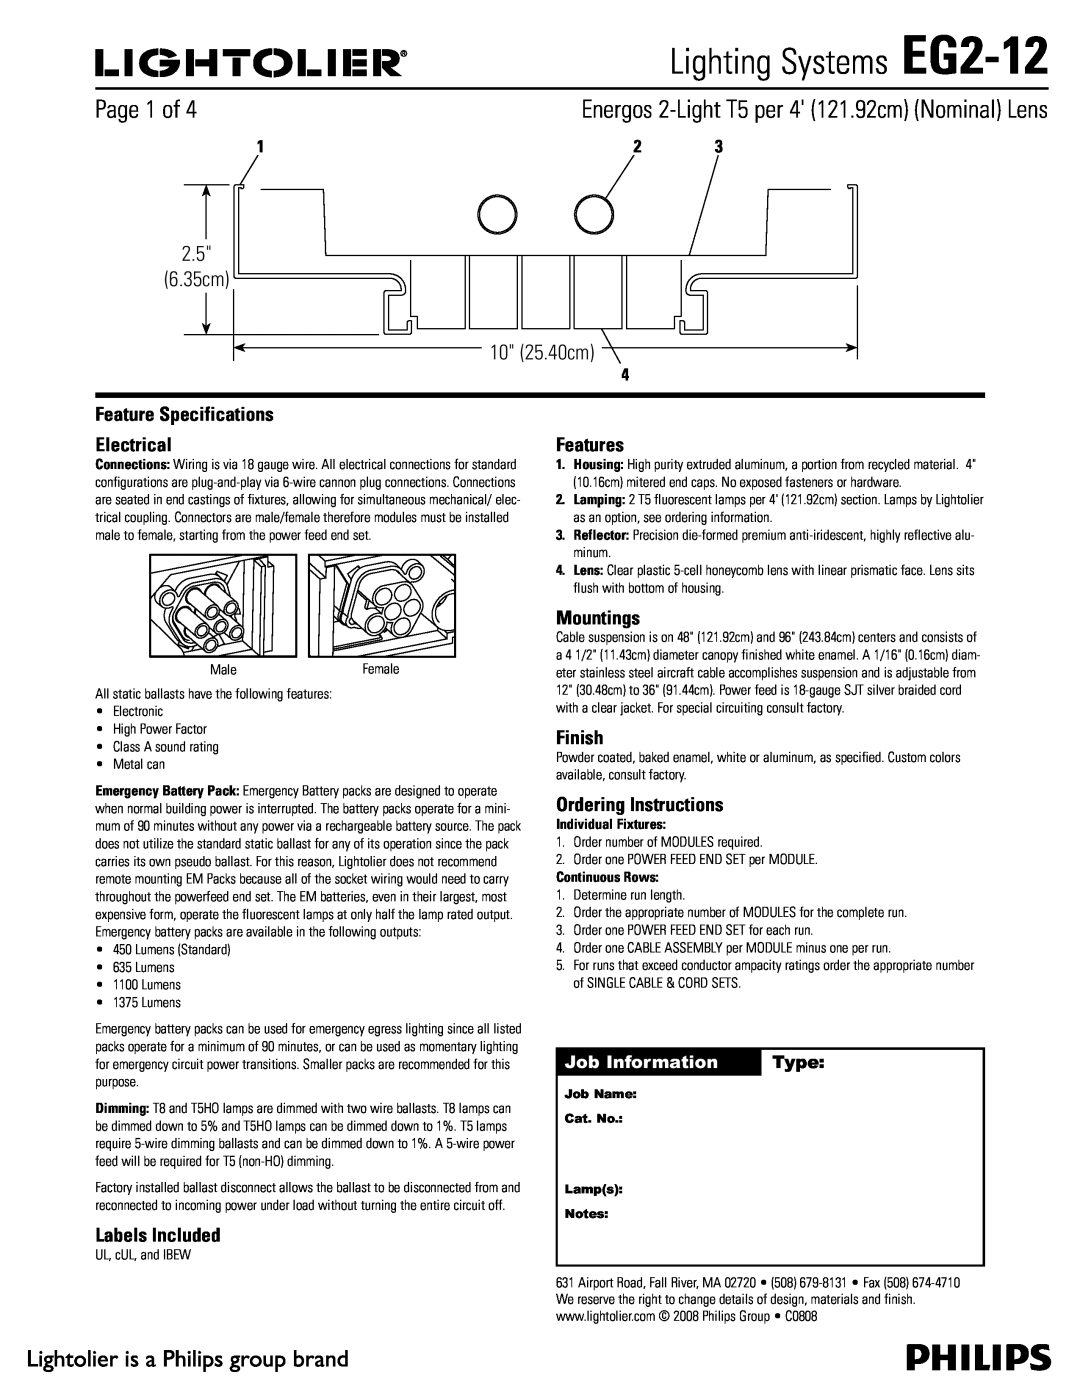 Lightolier specifications Lighting Systems EG2-12,  Dn  Dn, Job Information, Type 